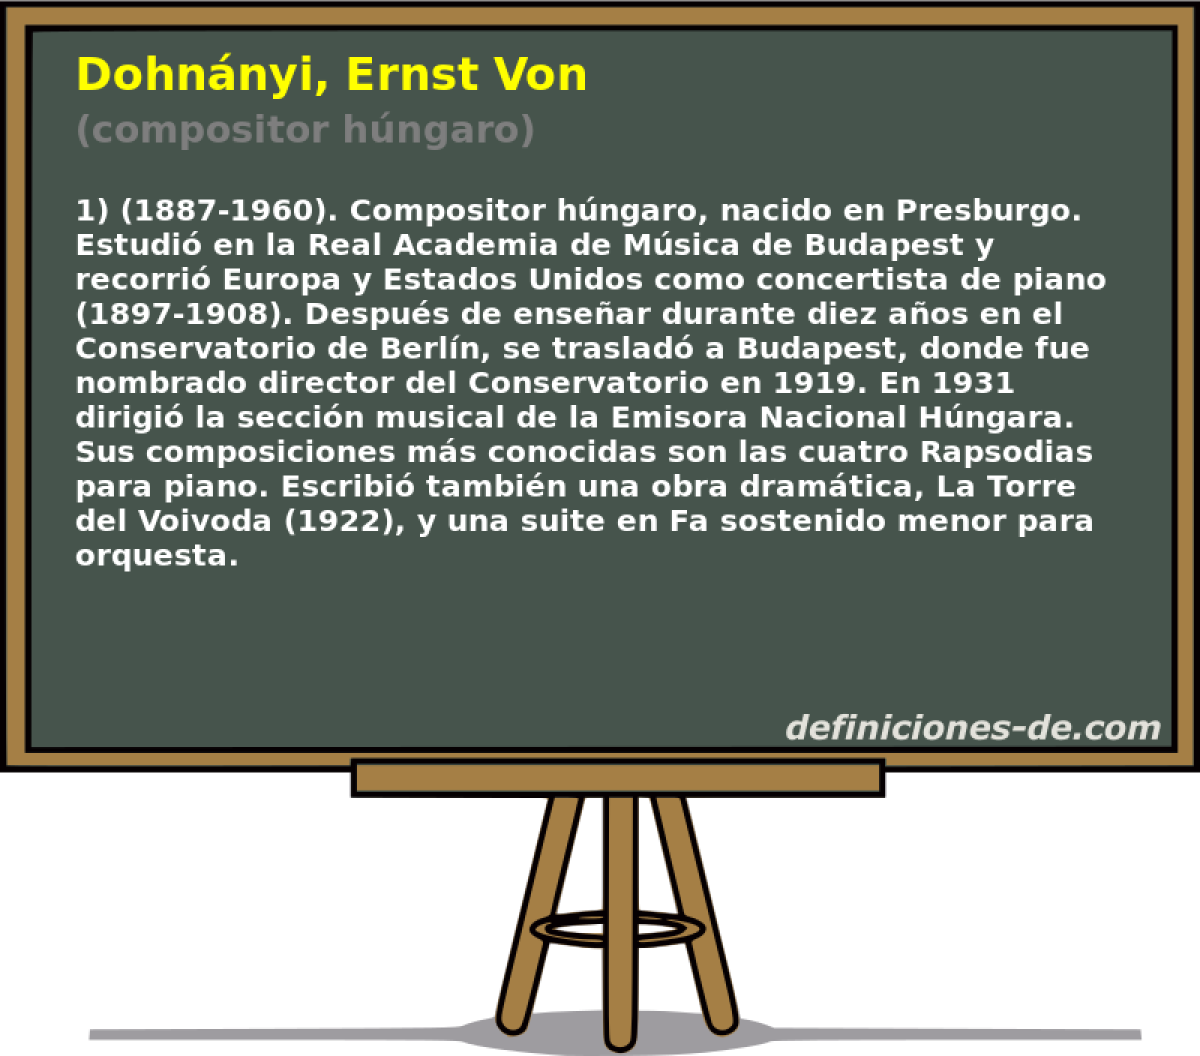 Dohnnyi, Ernst Von (compositor hngaro)